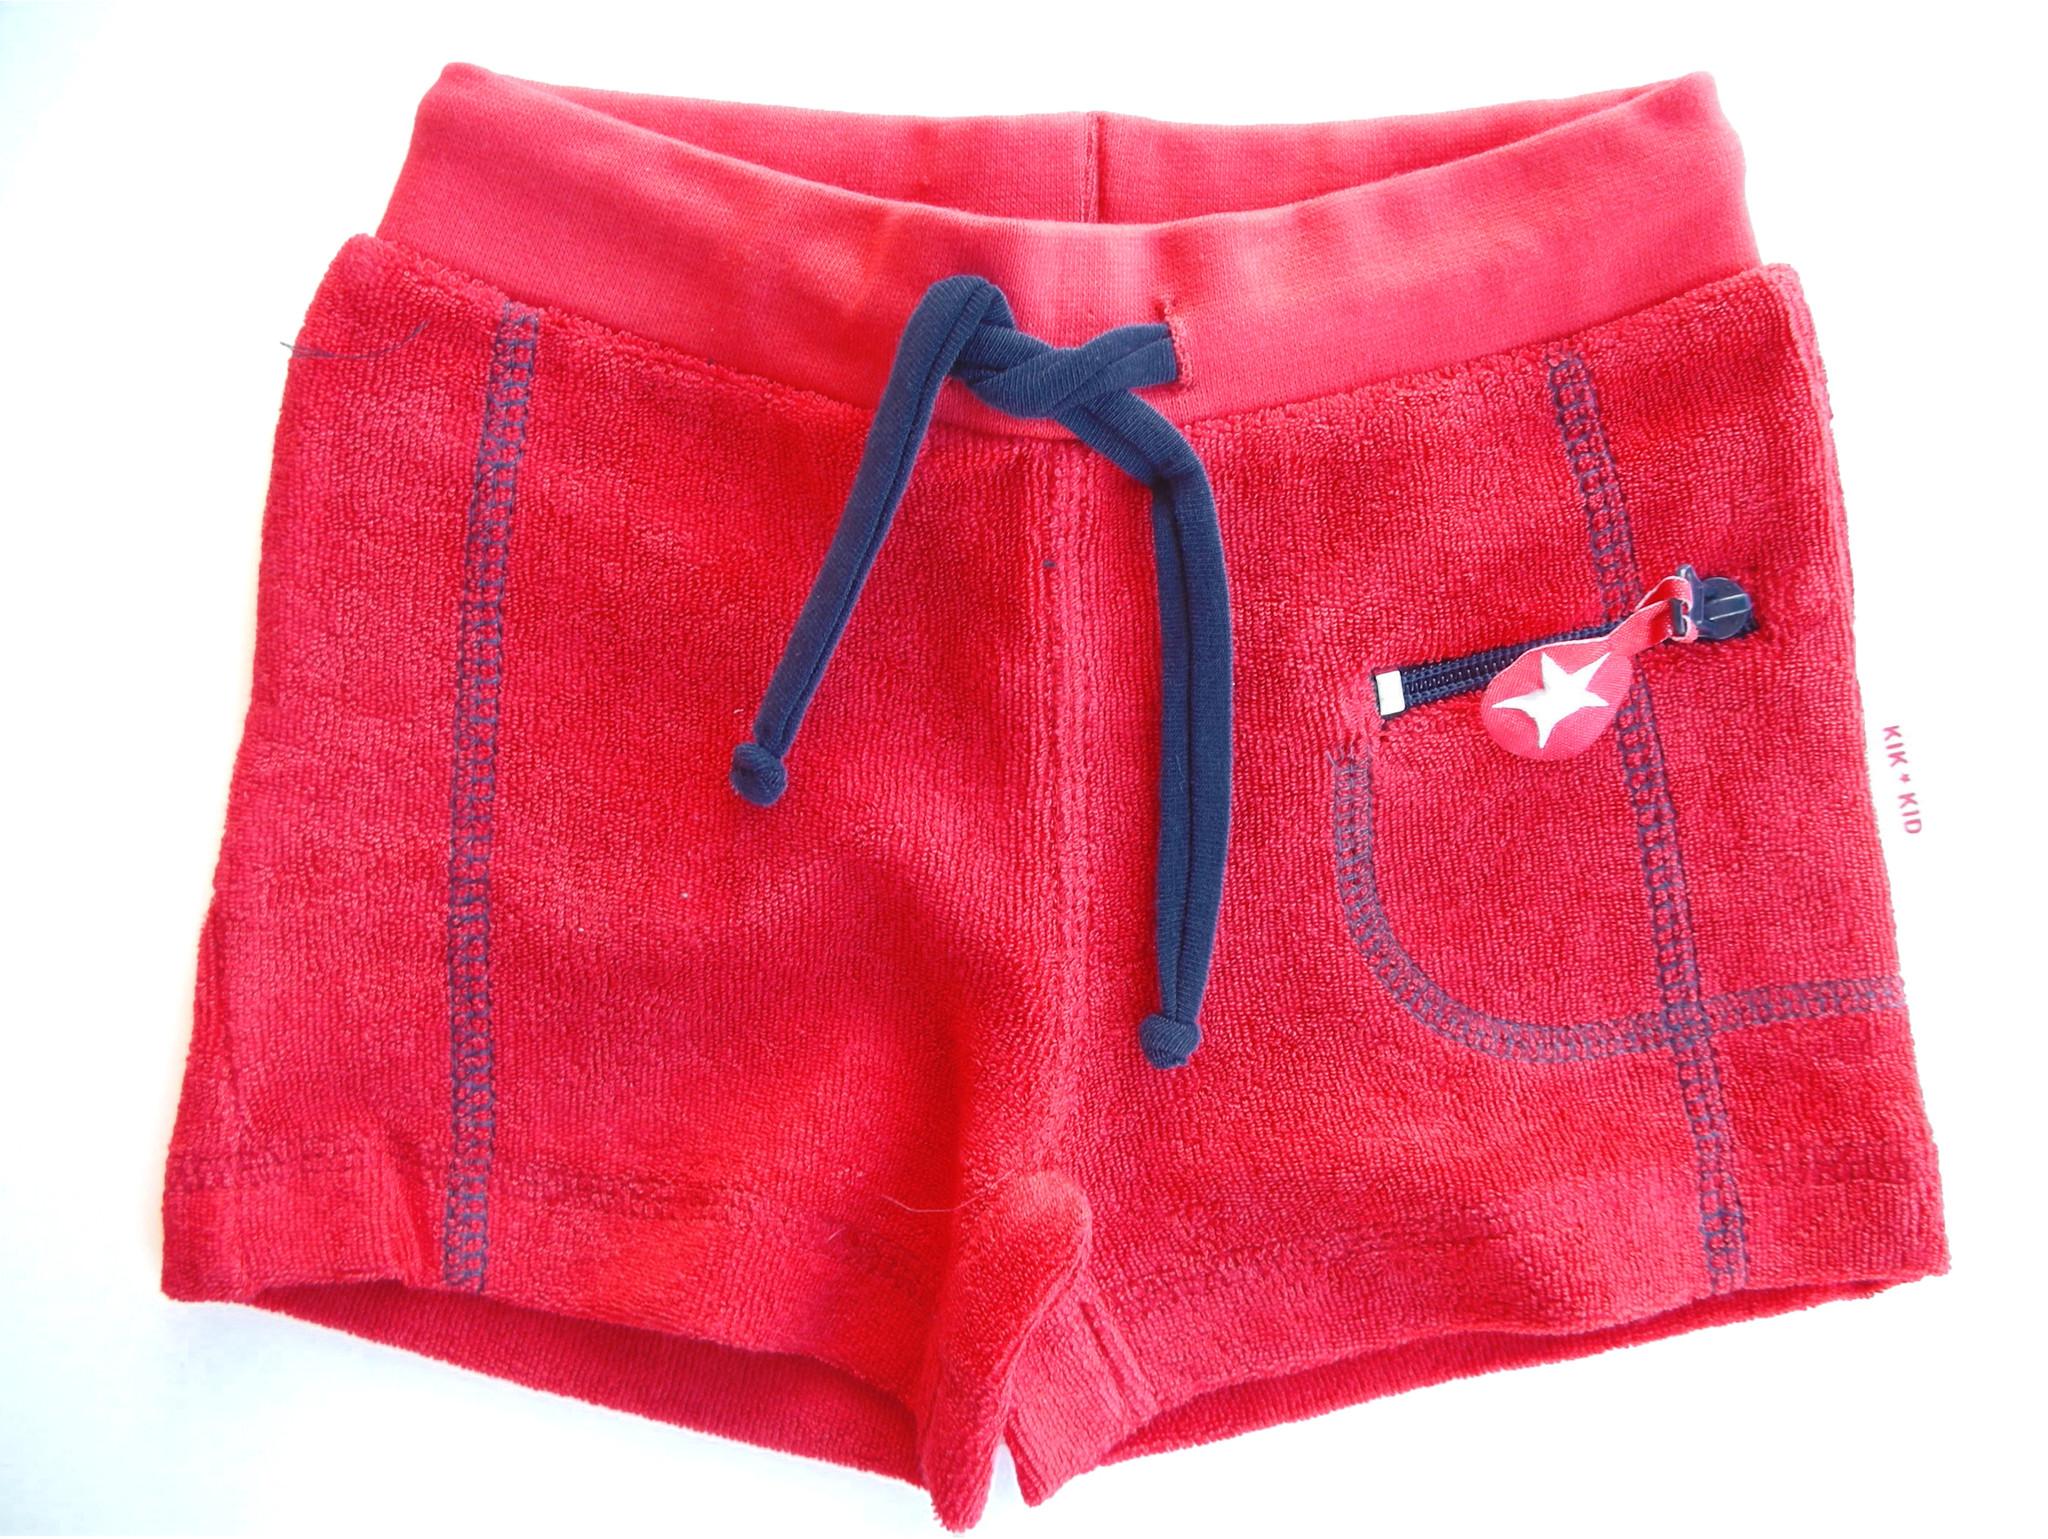 Foto Baby shorts de KIK-KID, pantalón corto rojo